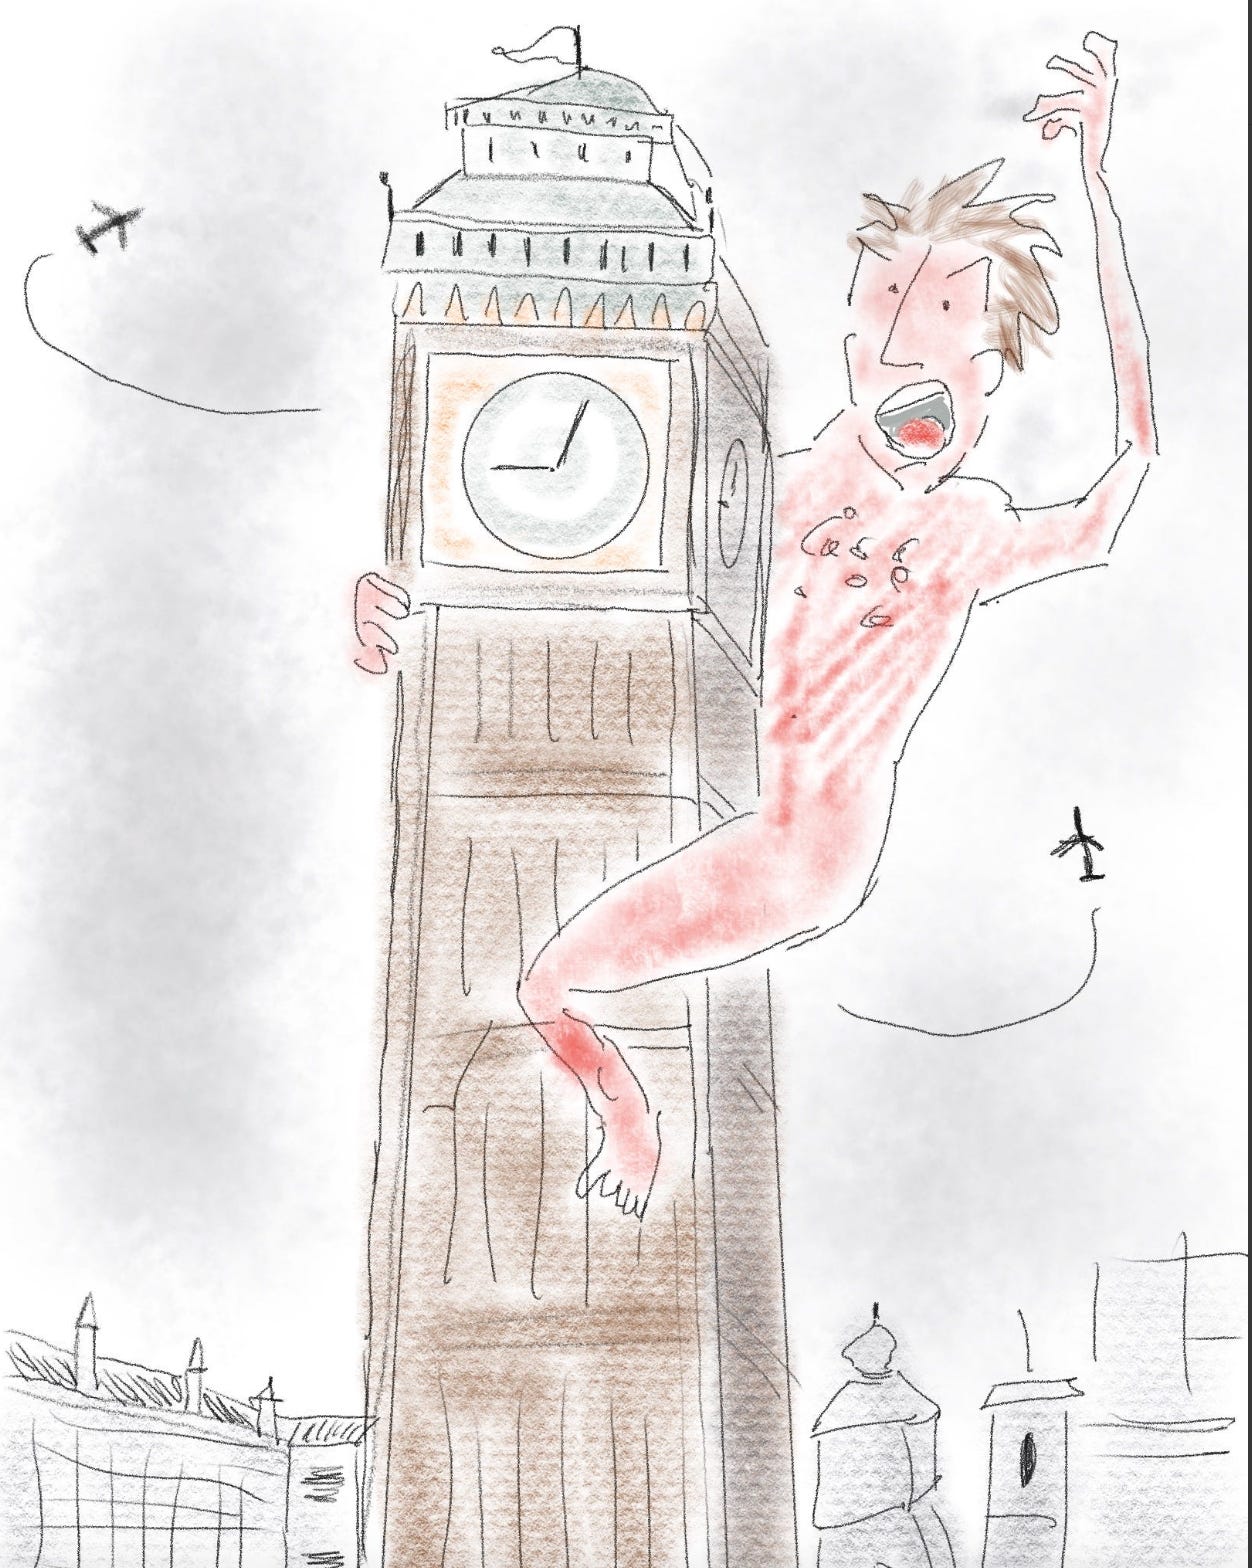 Angry naked man swats at airplanes on Big Ben